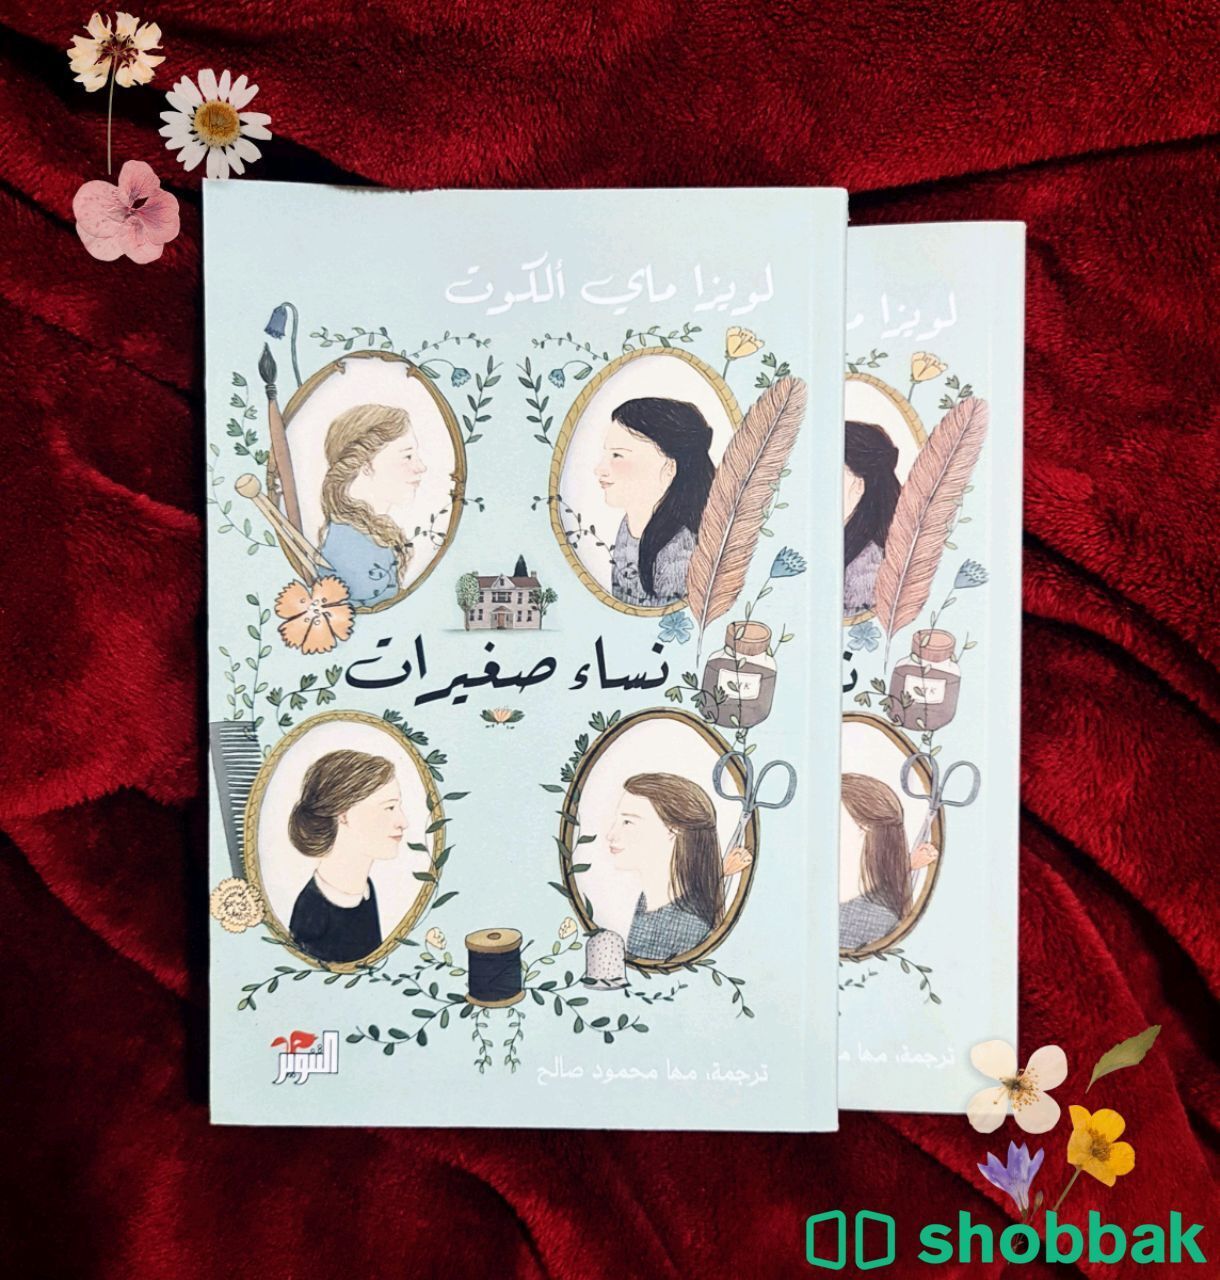 رواية نساء صغيرات الجزء الأول والثاني  Shobbak Saudi Arabia